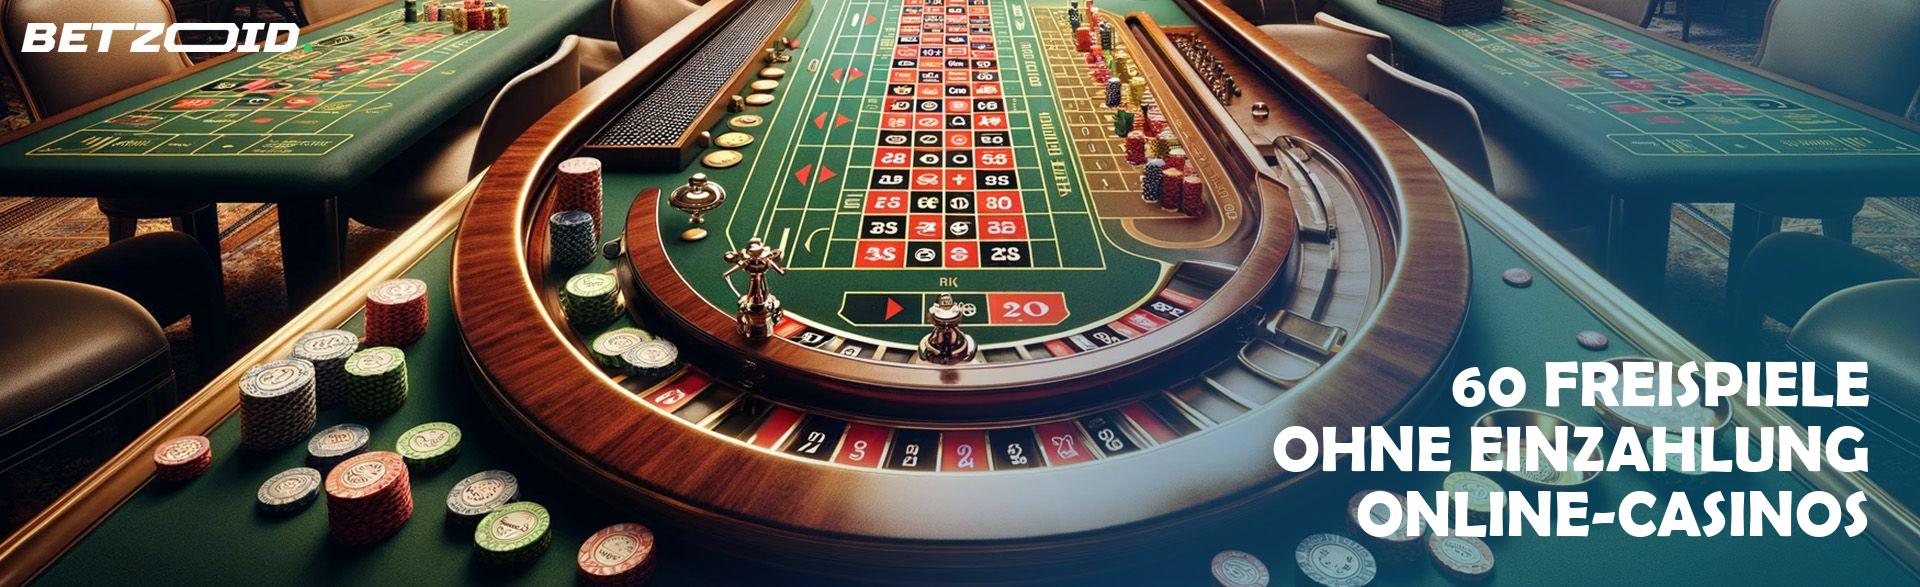 Die unerschlossene Goldmine von Online Casinos in Österreich, die praktisch niemand kennt